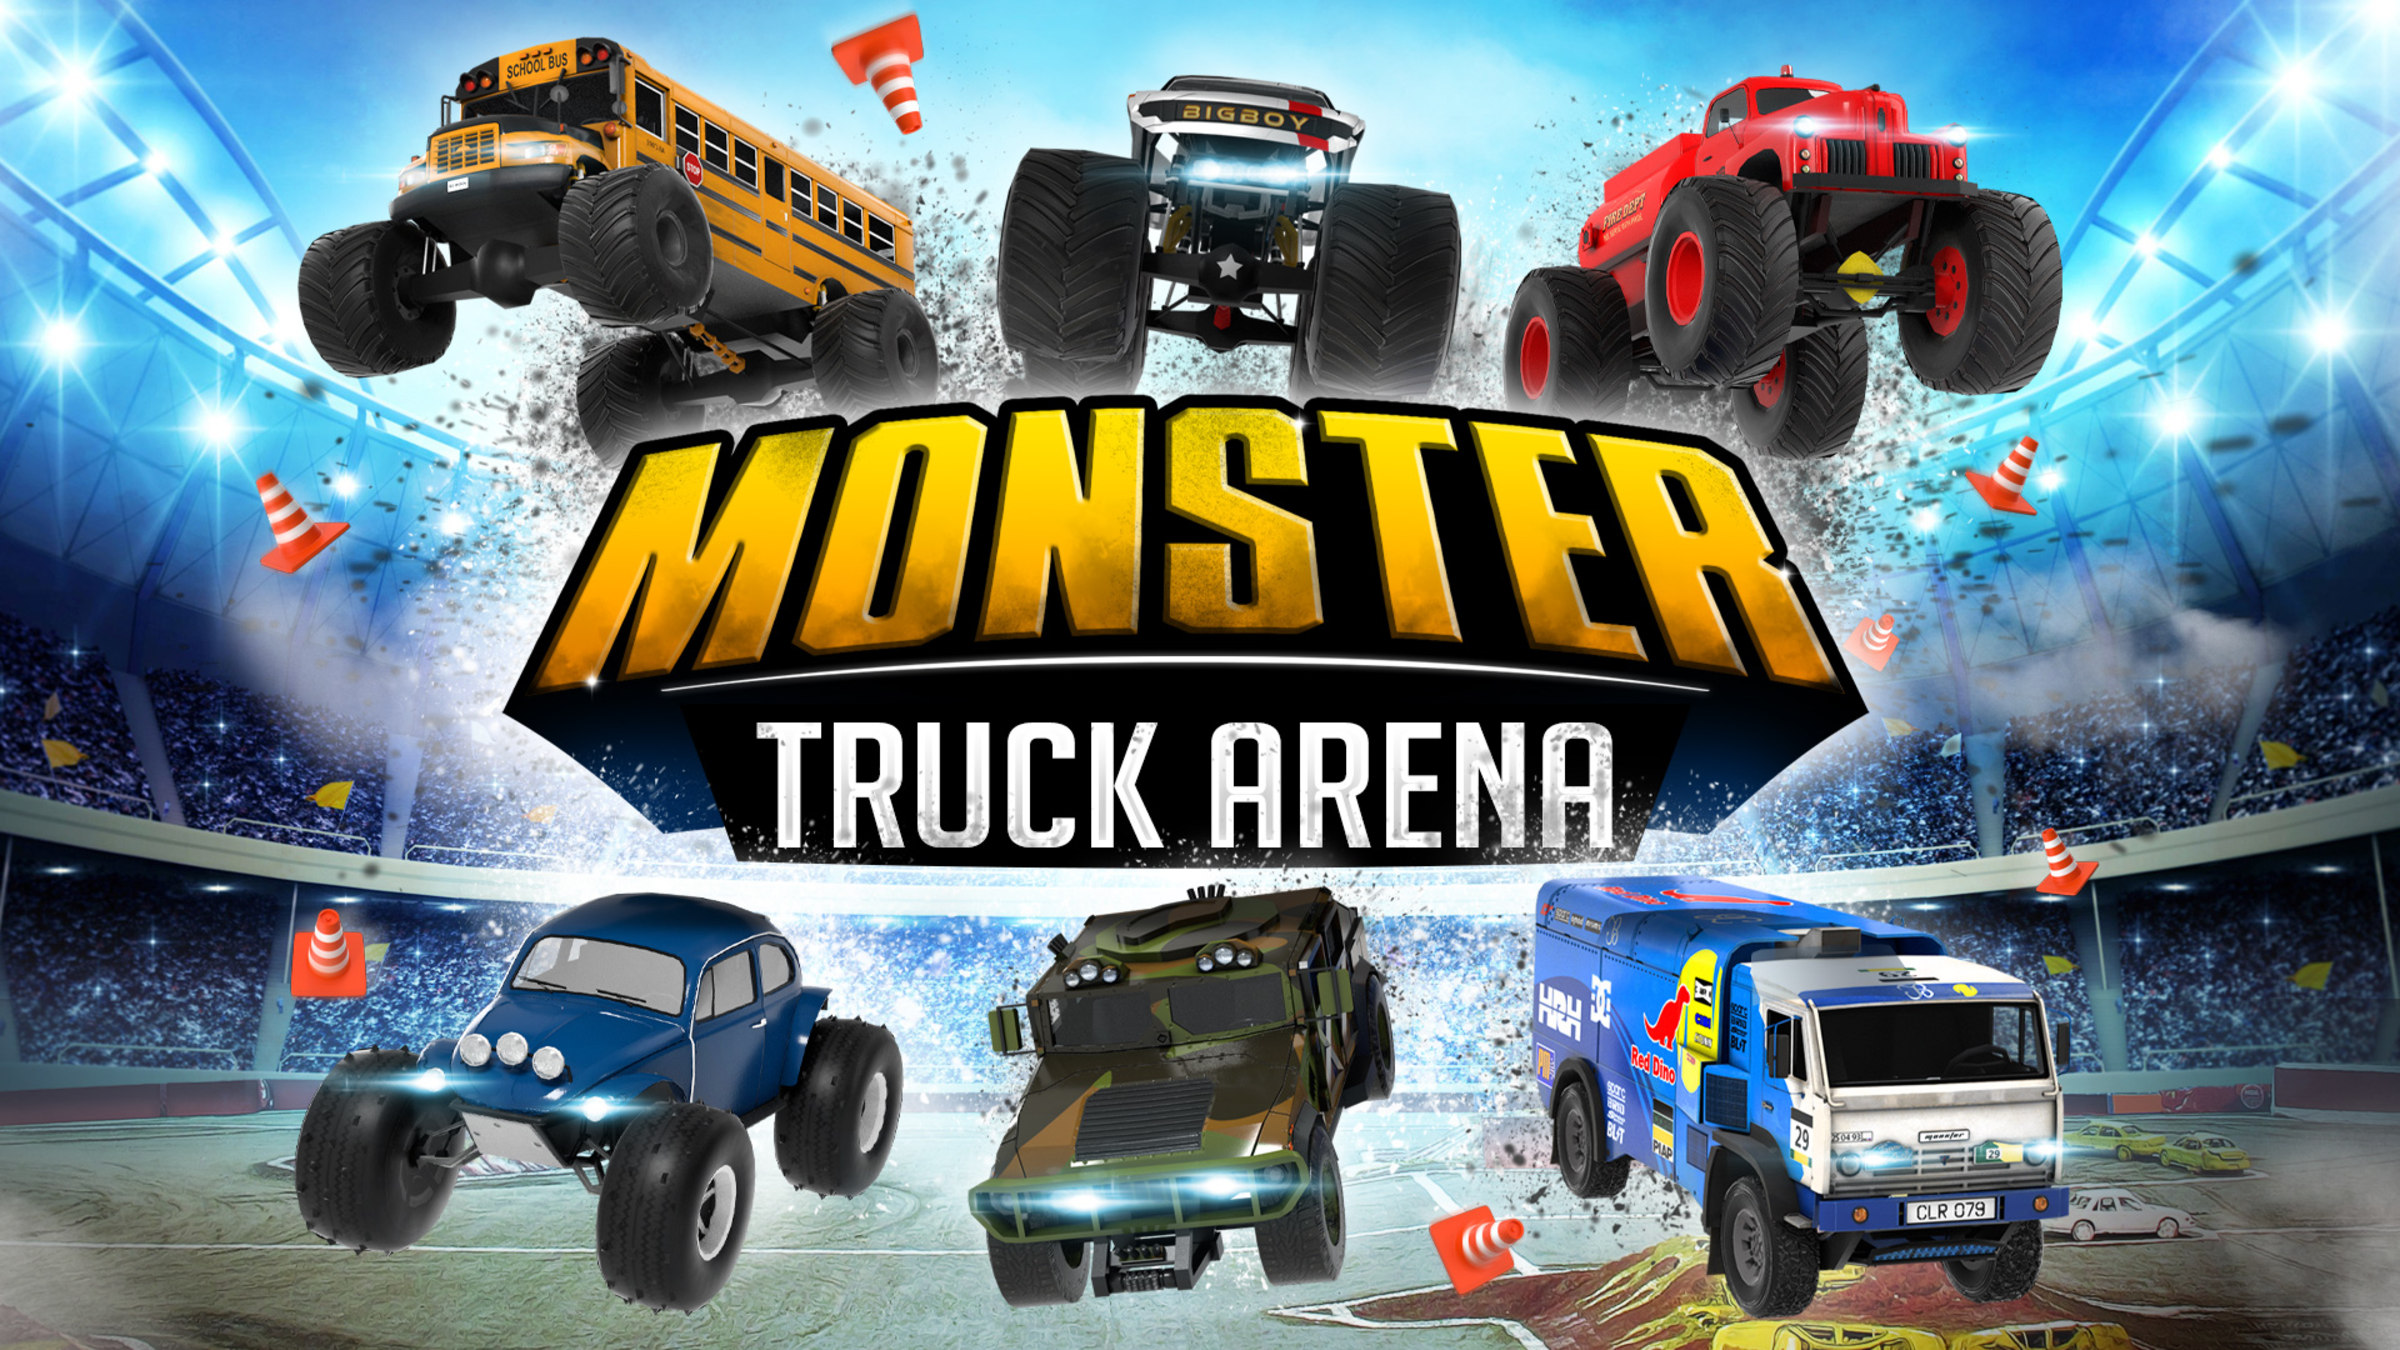 Monster Jam 2021 trucks, drivers